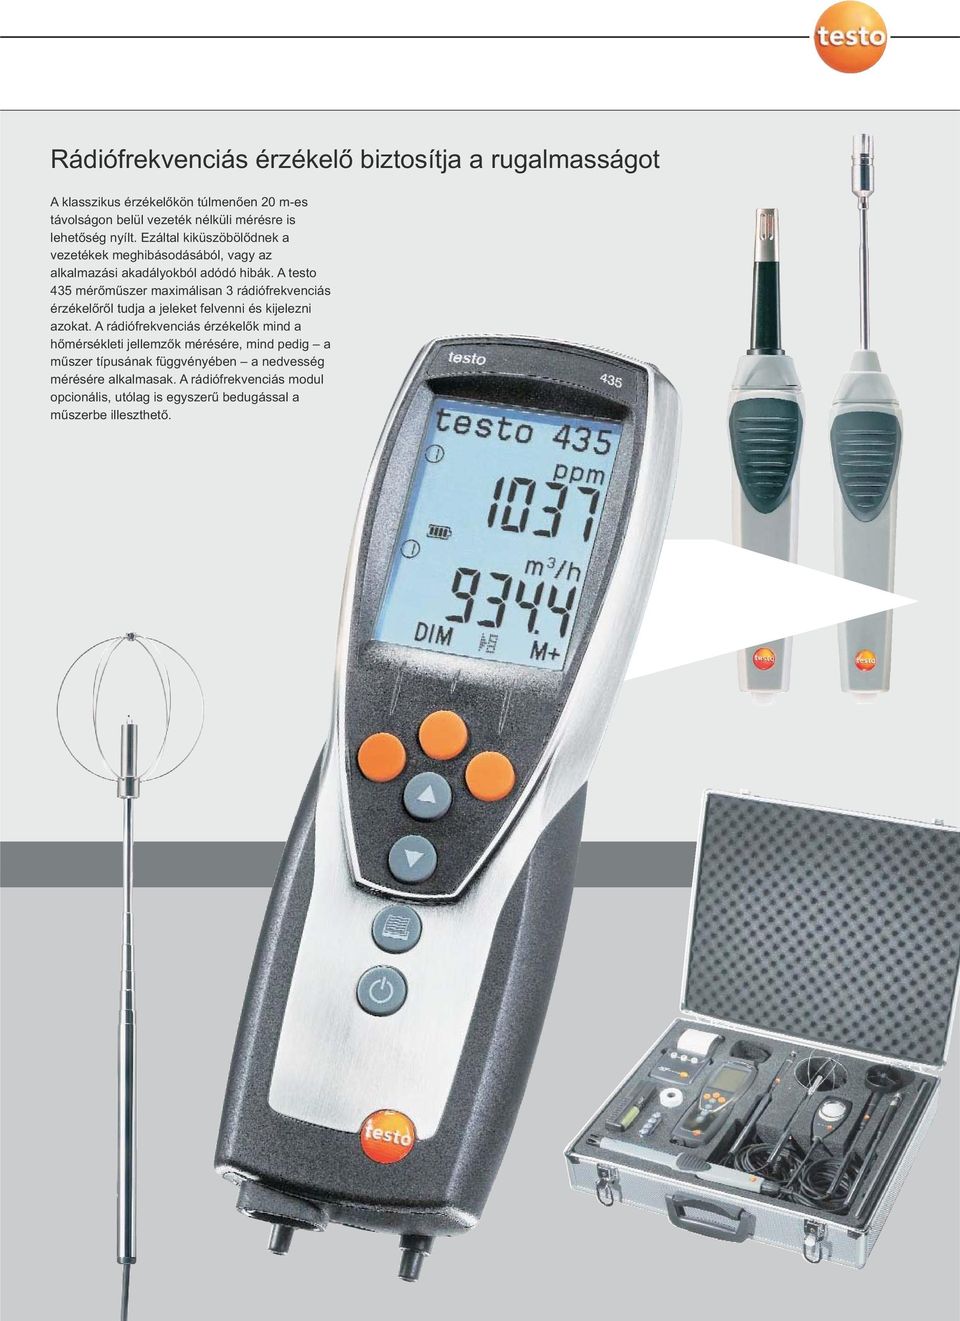 A testo 435 mérőműszer maximálisan 3 rádiófrekvenciás érzékelőről tudja a jeleket felvenni és kijelezni azokat.